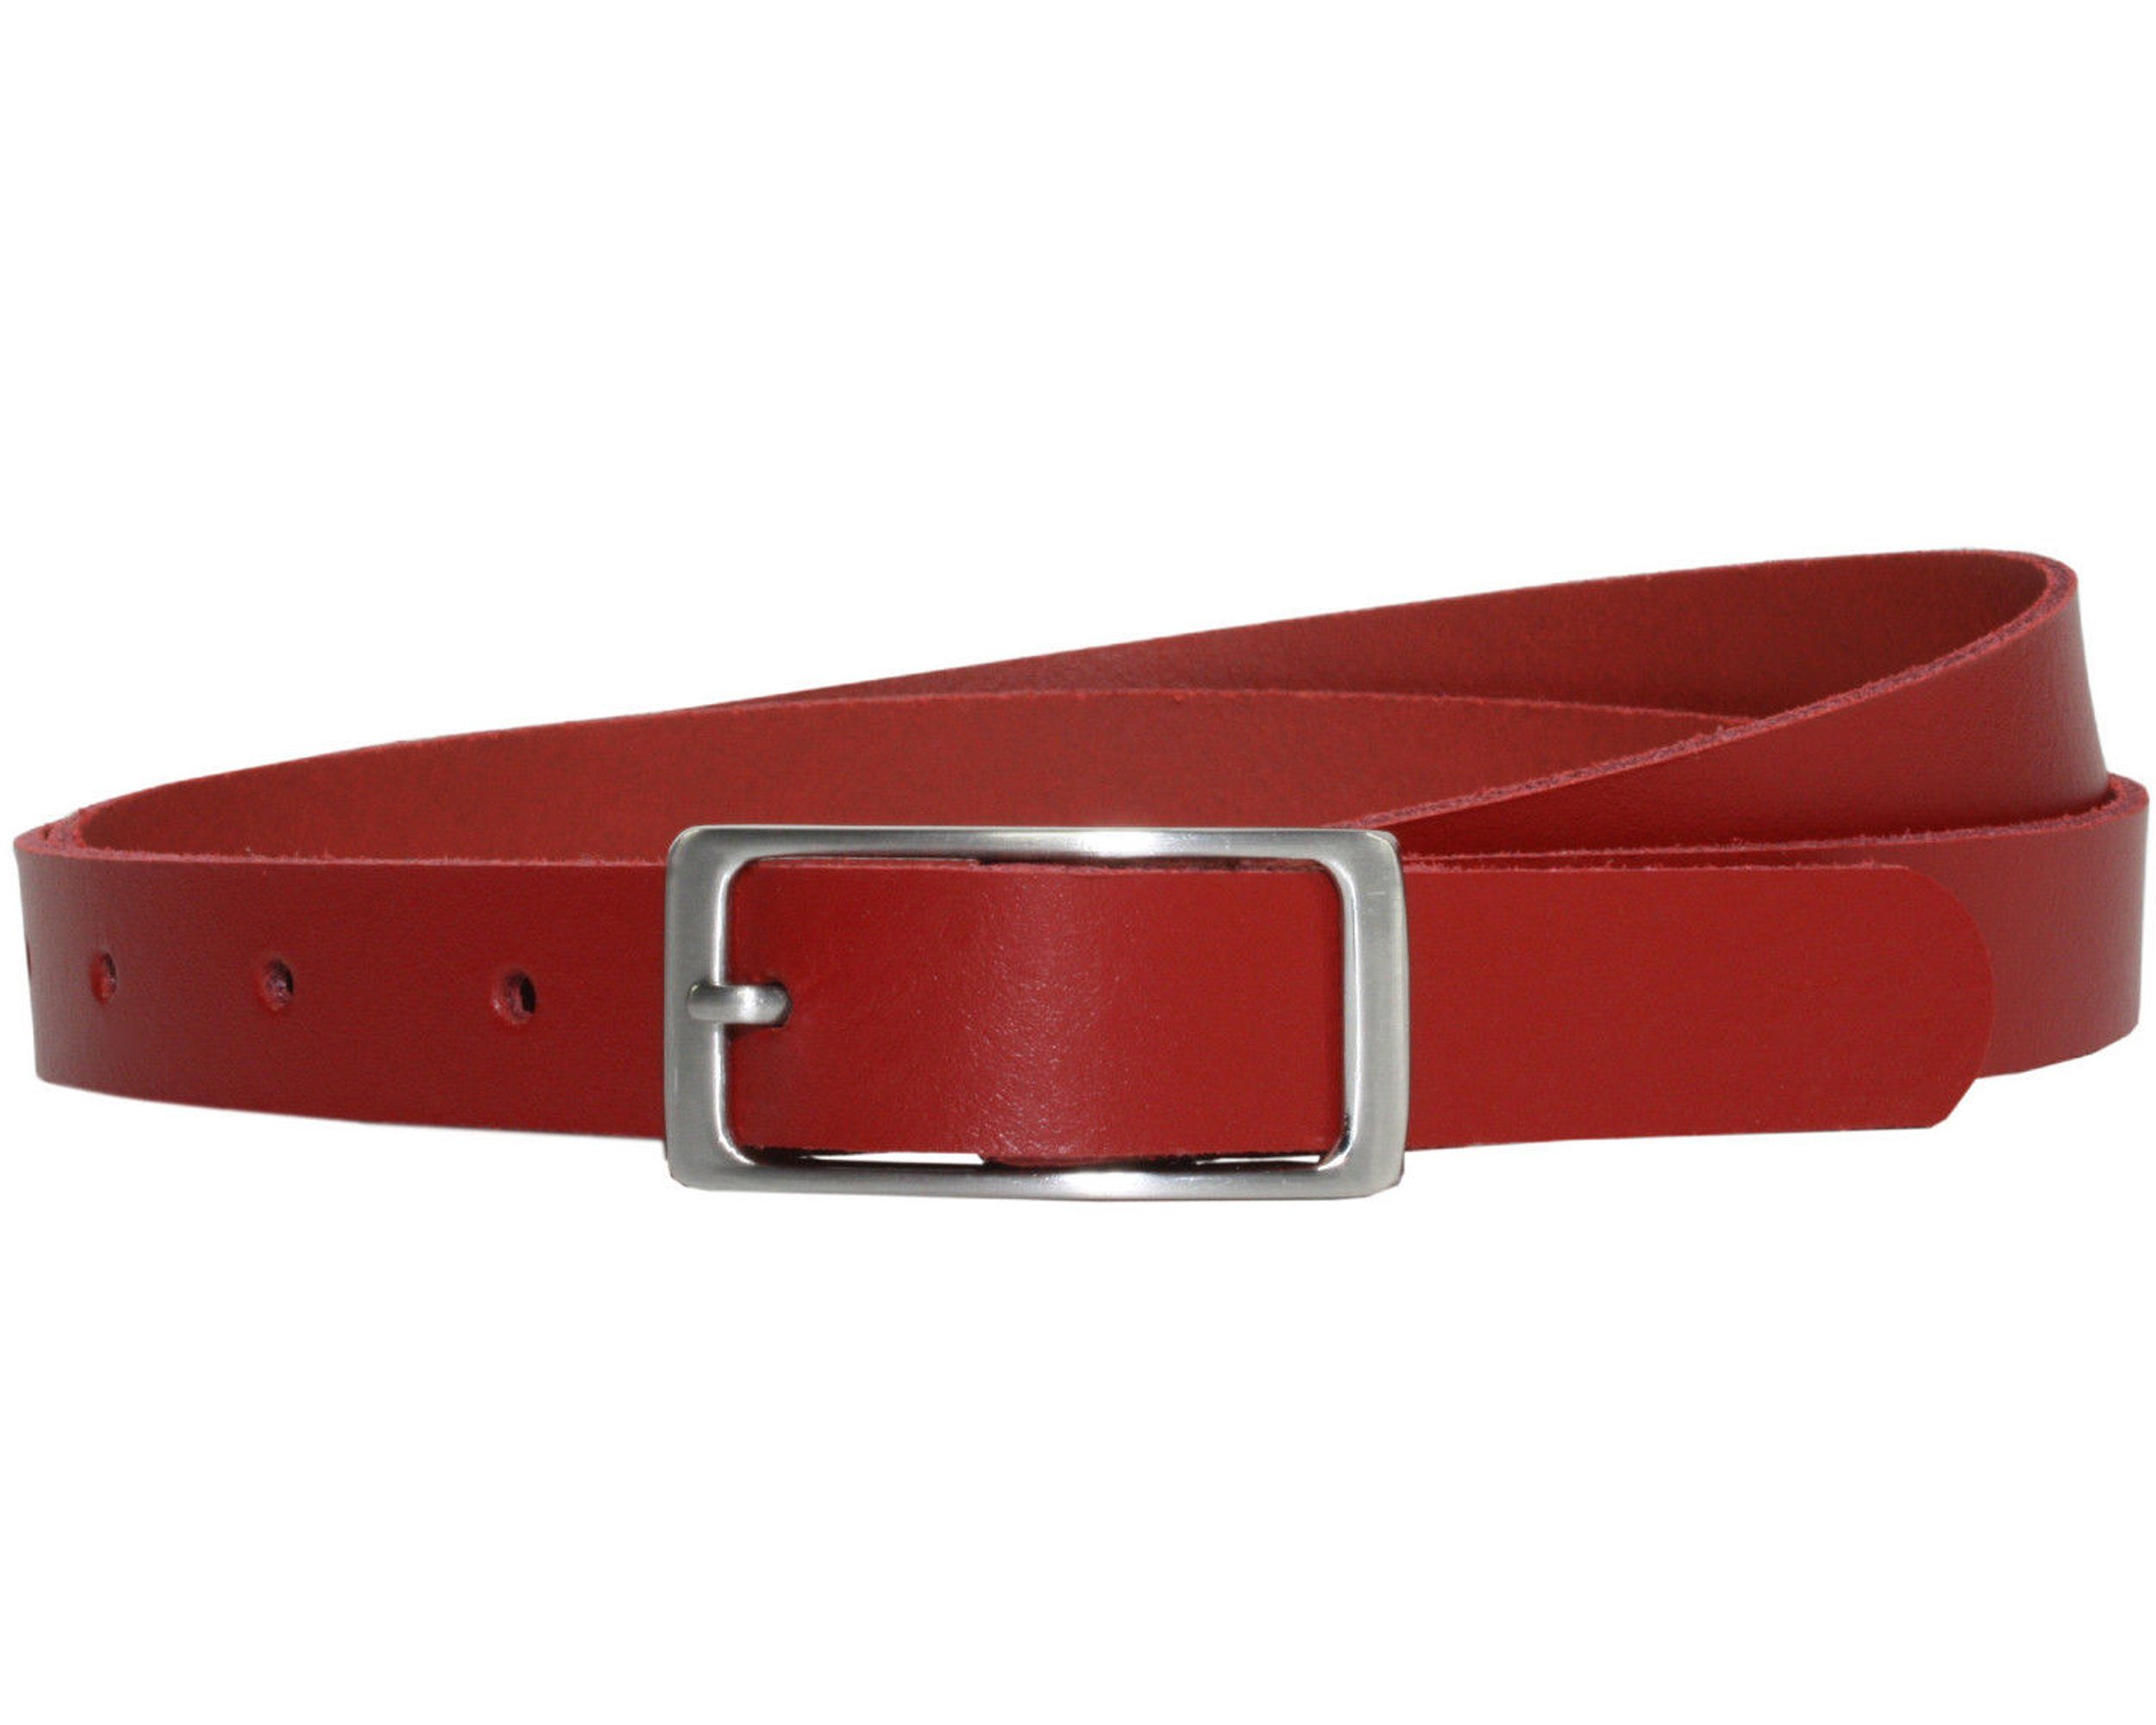 COLOGNEBELT Ledergürtel A1-SL Roter Ledergürtel im klassischen Design, mit silberner eckiger Gürtelschnalle